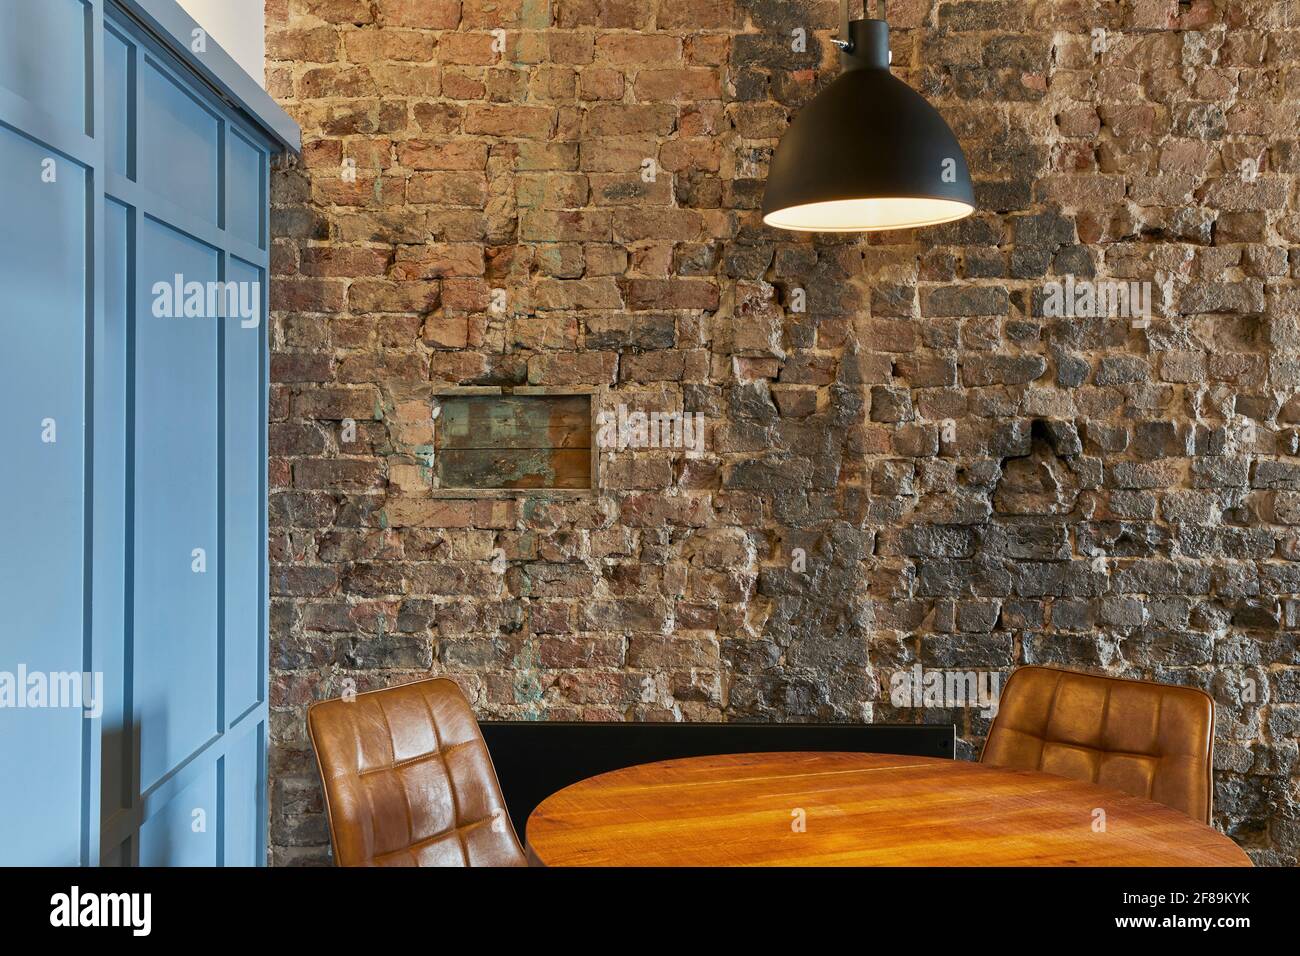 Innenraum des Untersuchungsbereichs. Lattern Student Accommodation, Liverpool, Großbritannien. Architekt: Naomi Cleaver, 2020. Stockfoto